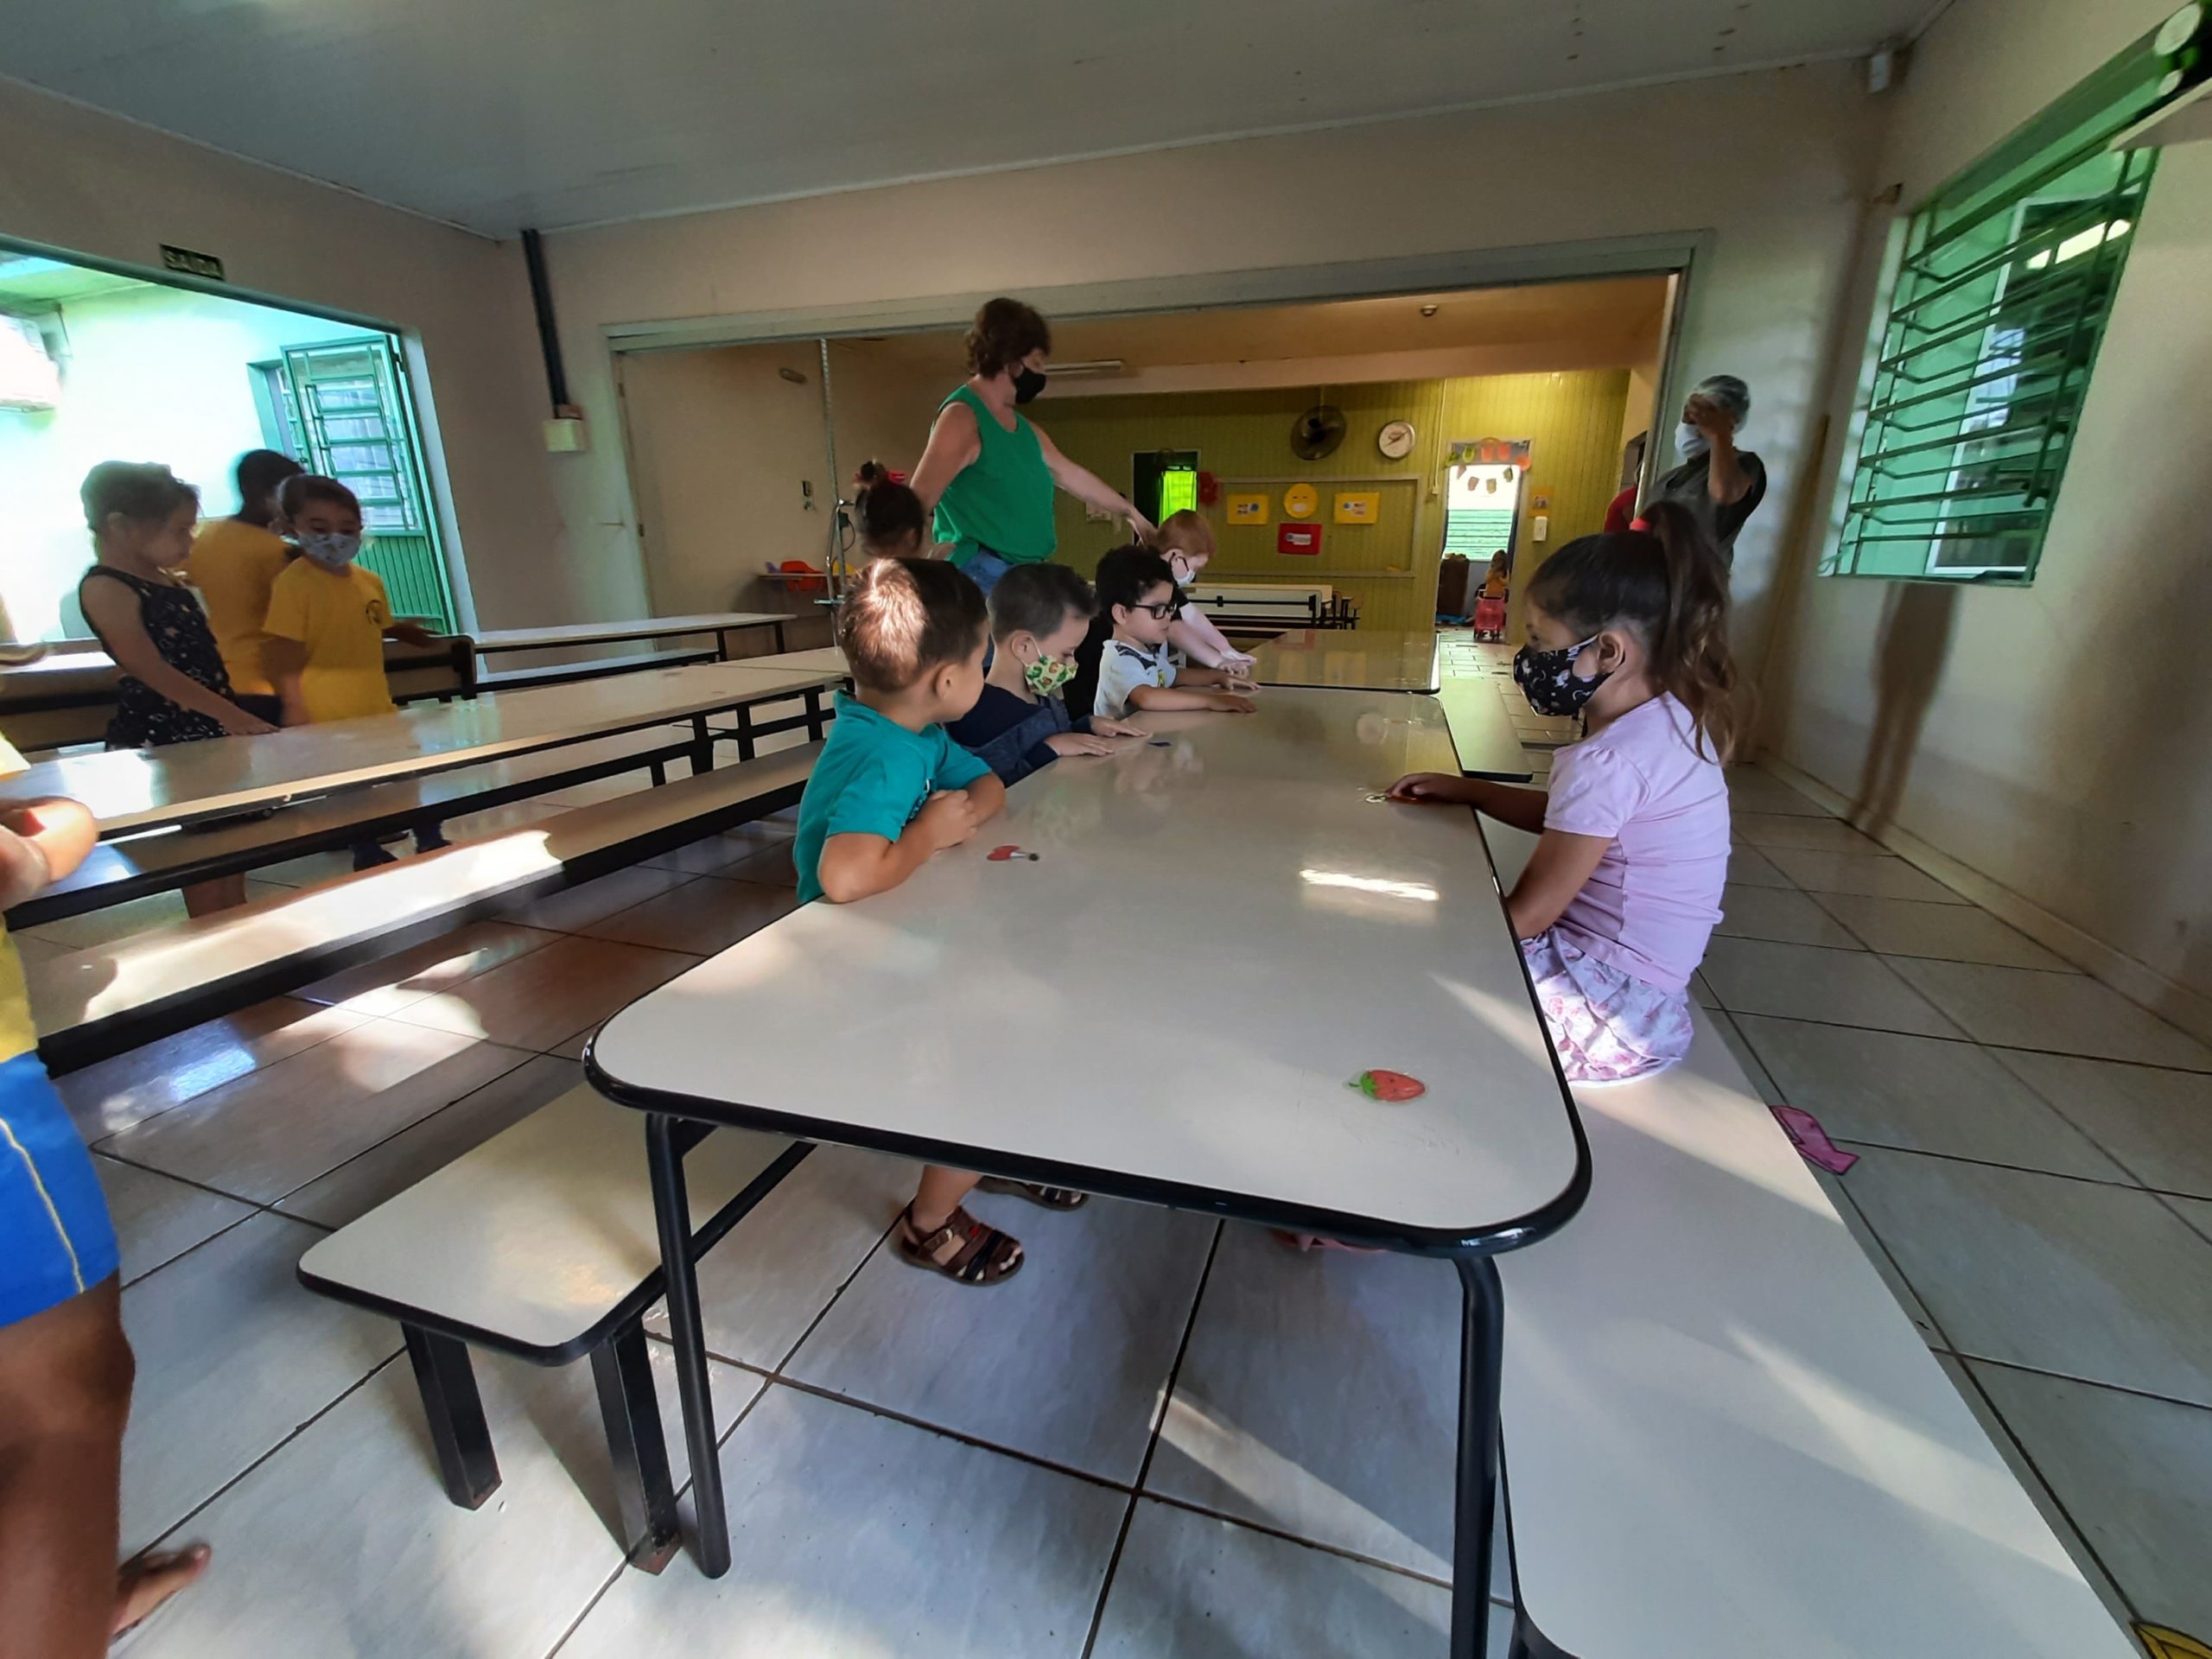 Lugares nas mesas foram demarcados com adesivos de frutas, para garantir o distanciamento entre as crianças